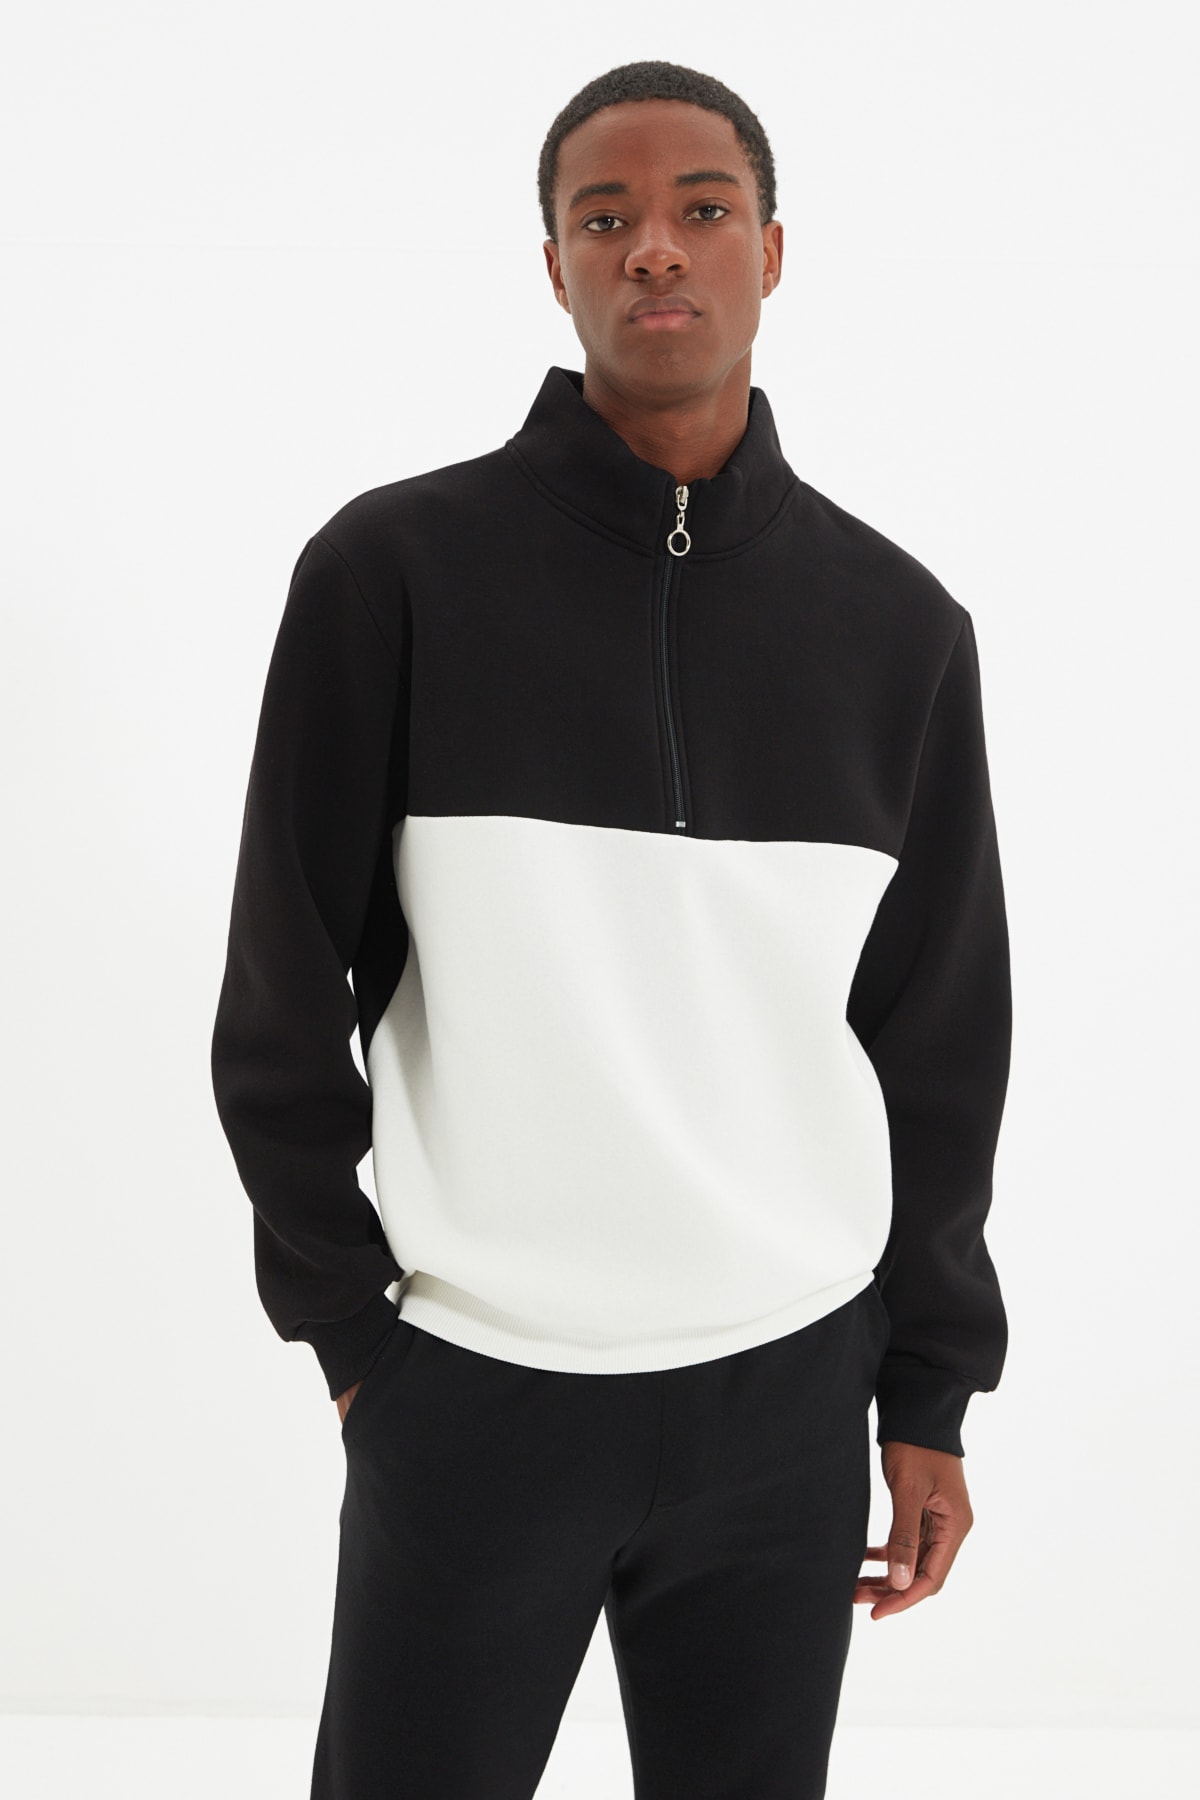 Trendyol Men's Black Regular/Real Fit Color Block Zipper Fleece Inner Cotton Sweatshirt